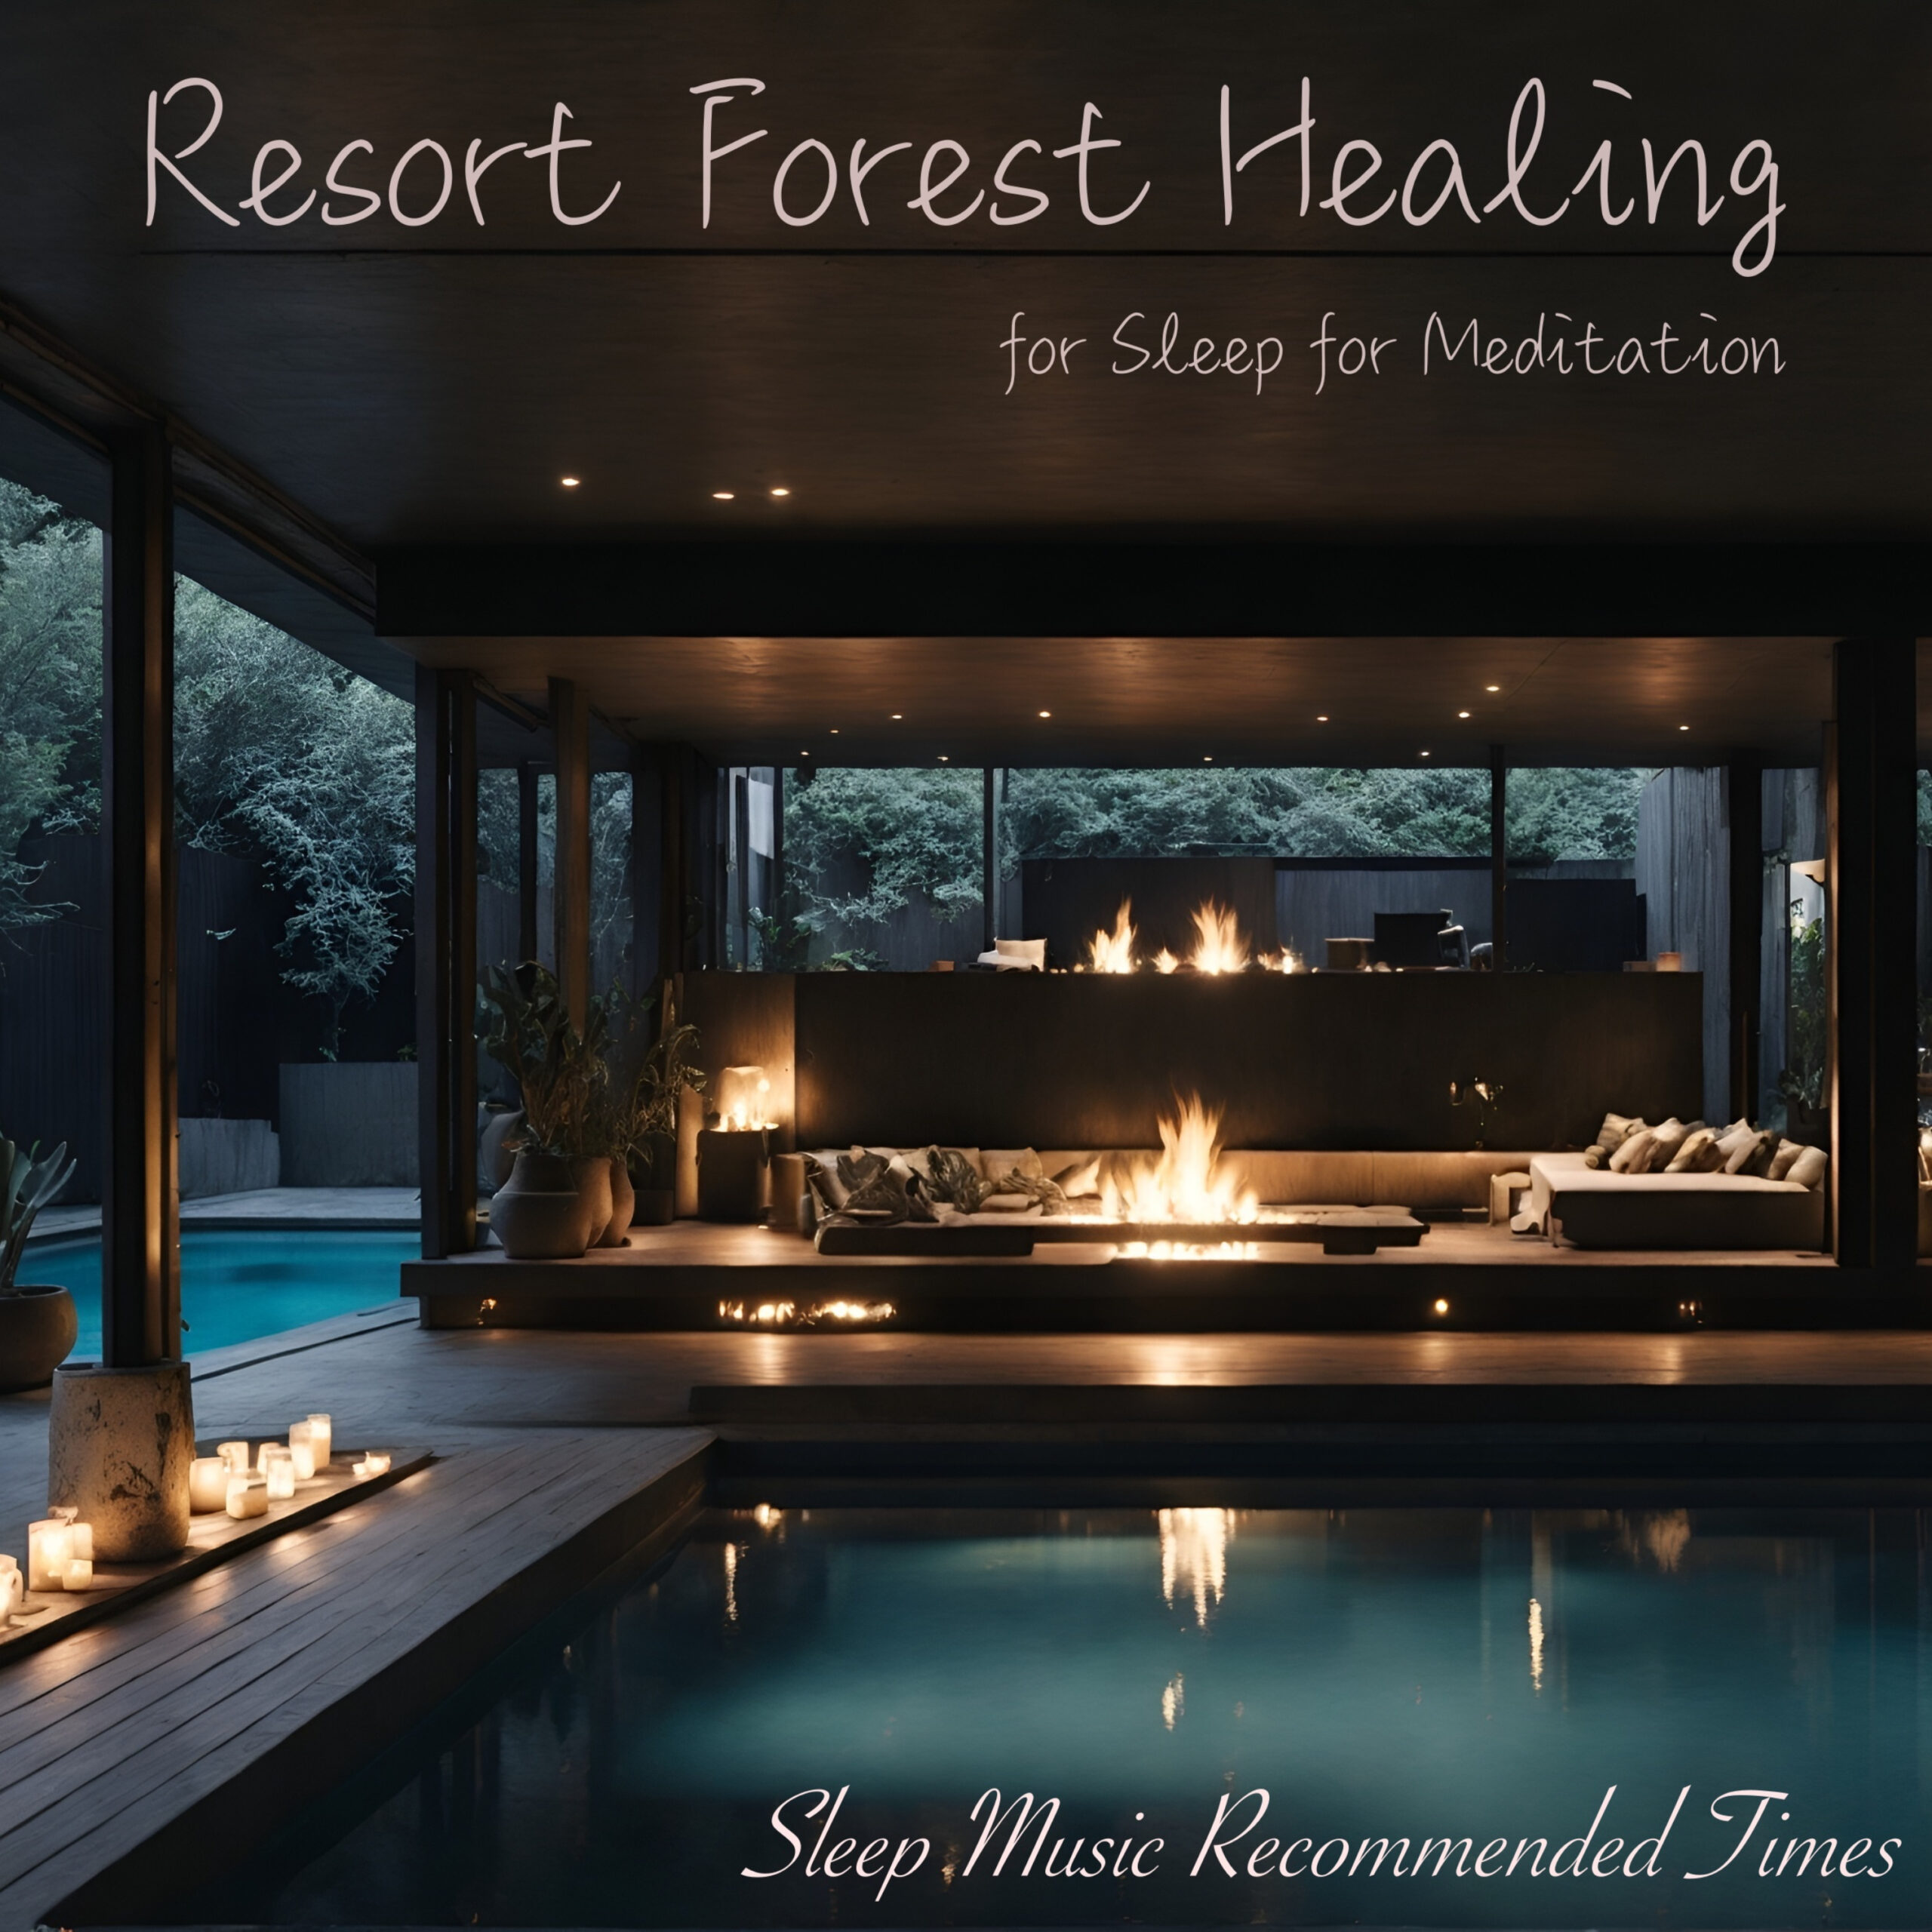 Resort Forest Healing for Sleep for Meditation 睡眠リラックスピアノで癒しのひとときを